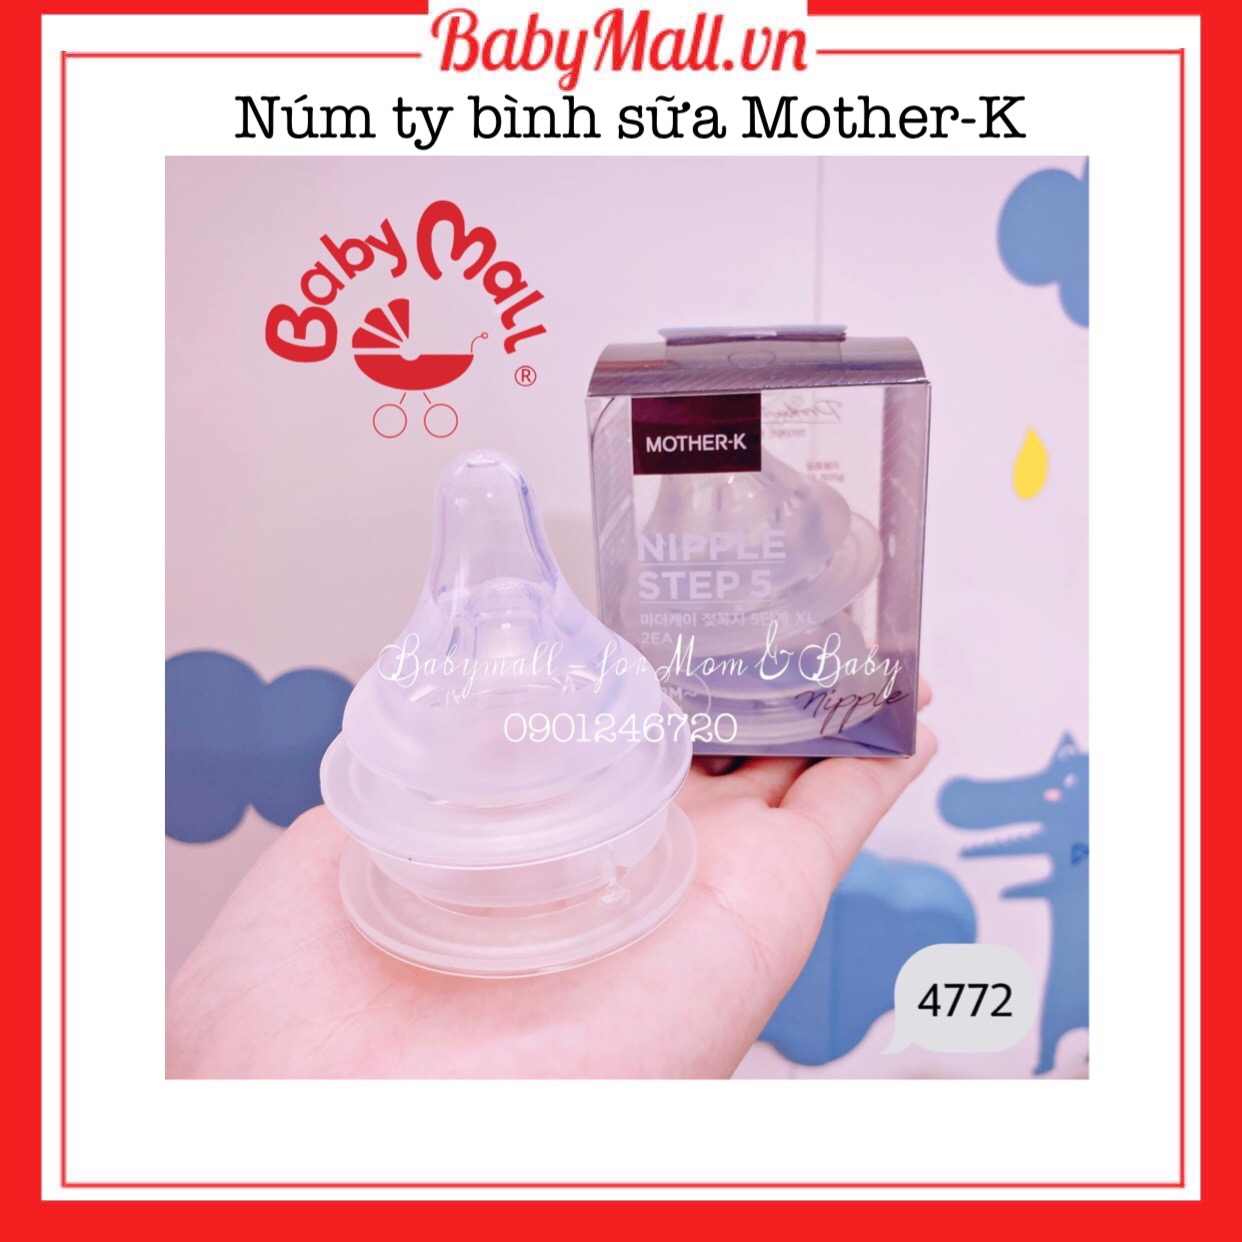 Núm bình sữa Mother-K Babymall.vn